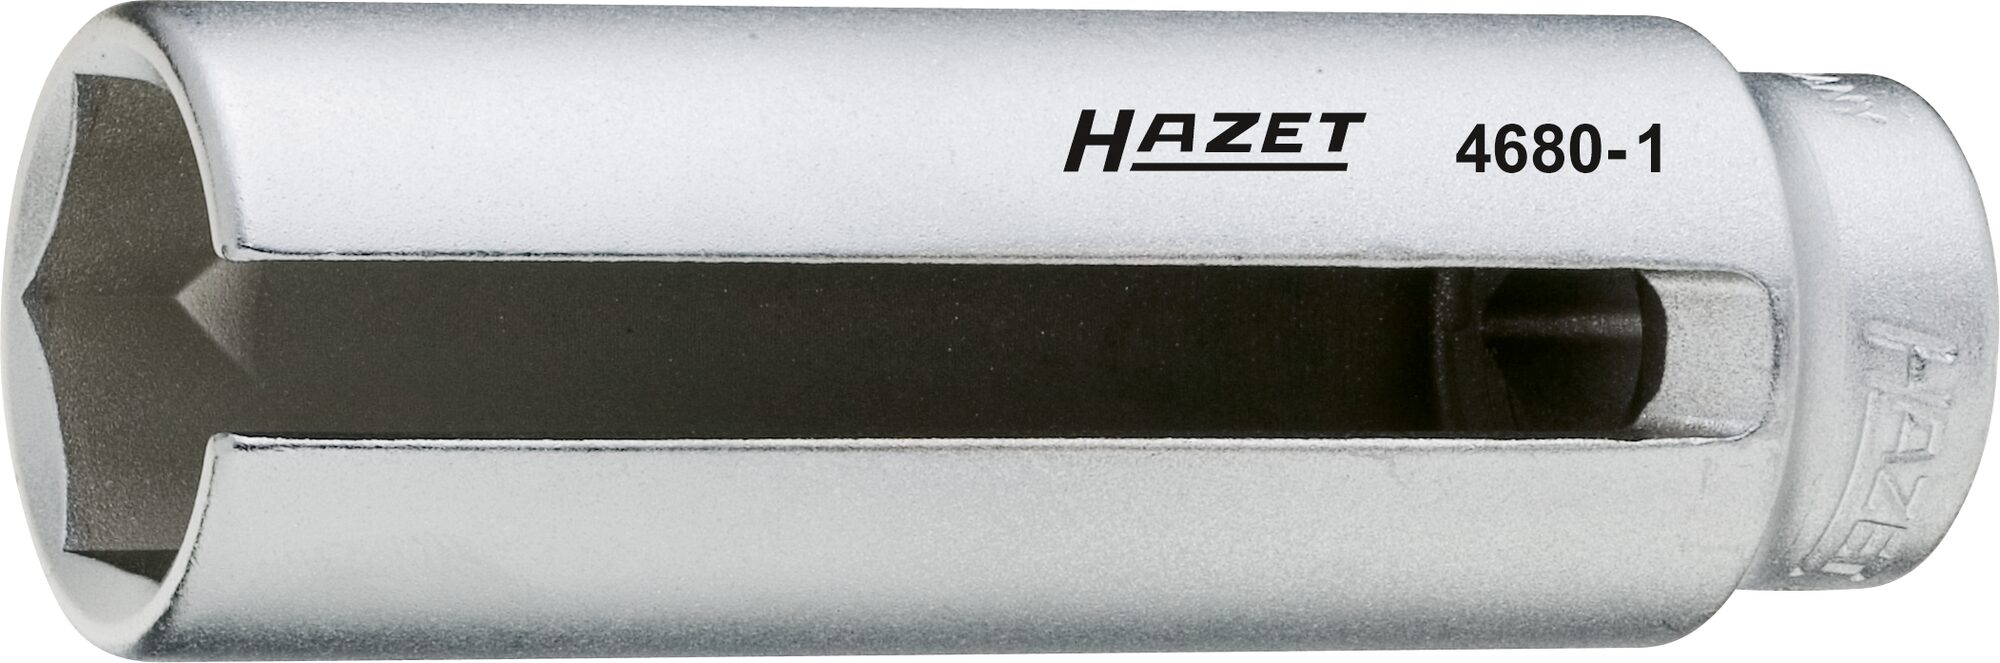 HAZET Lambda-Sonden Einsatz 4680-1 · Vierkant hohl 12,5 mm (1/2 Zoll) · Außen Sechskant Profil · 22 mm